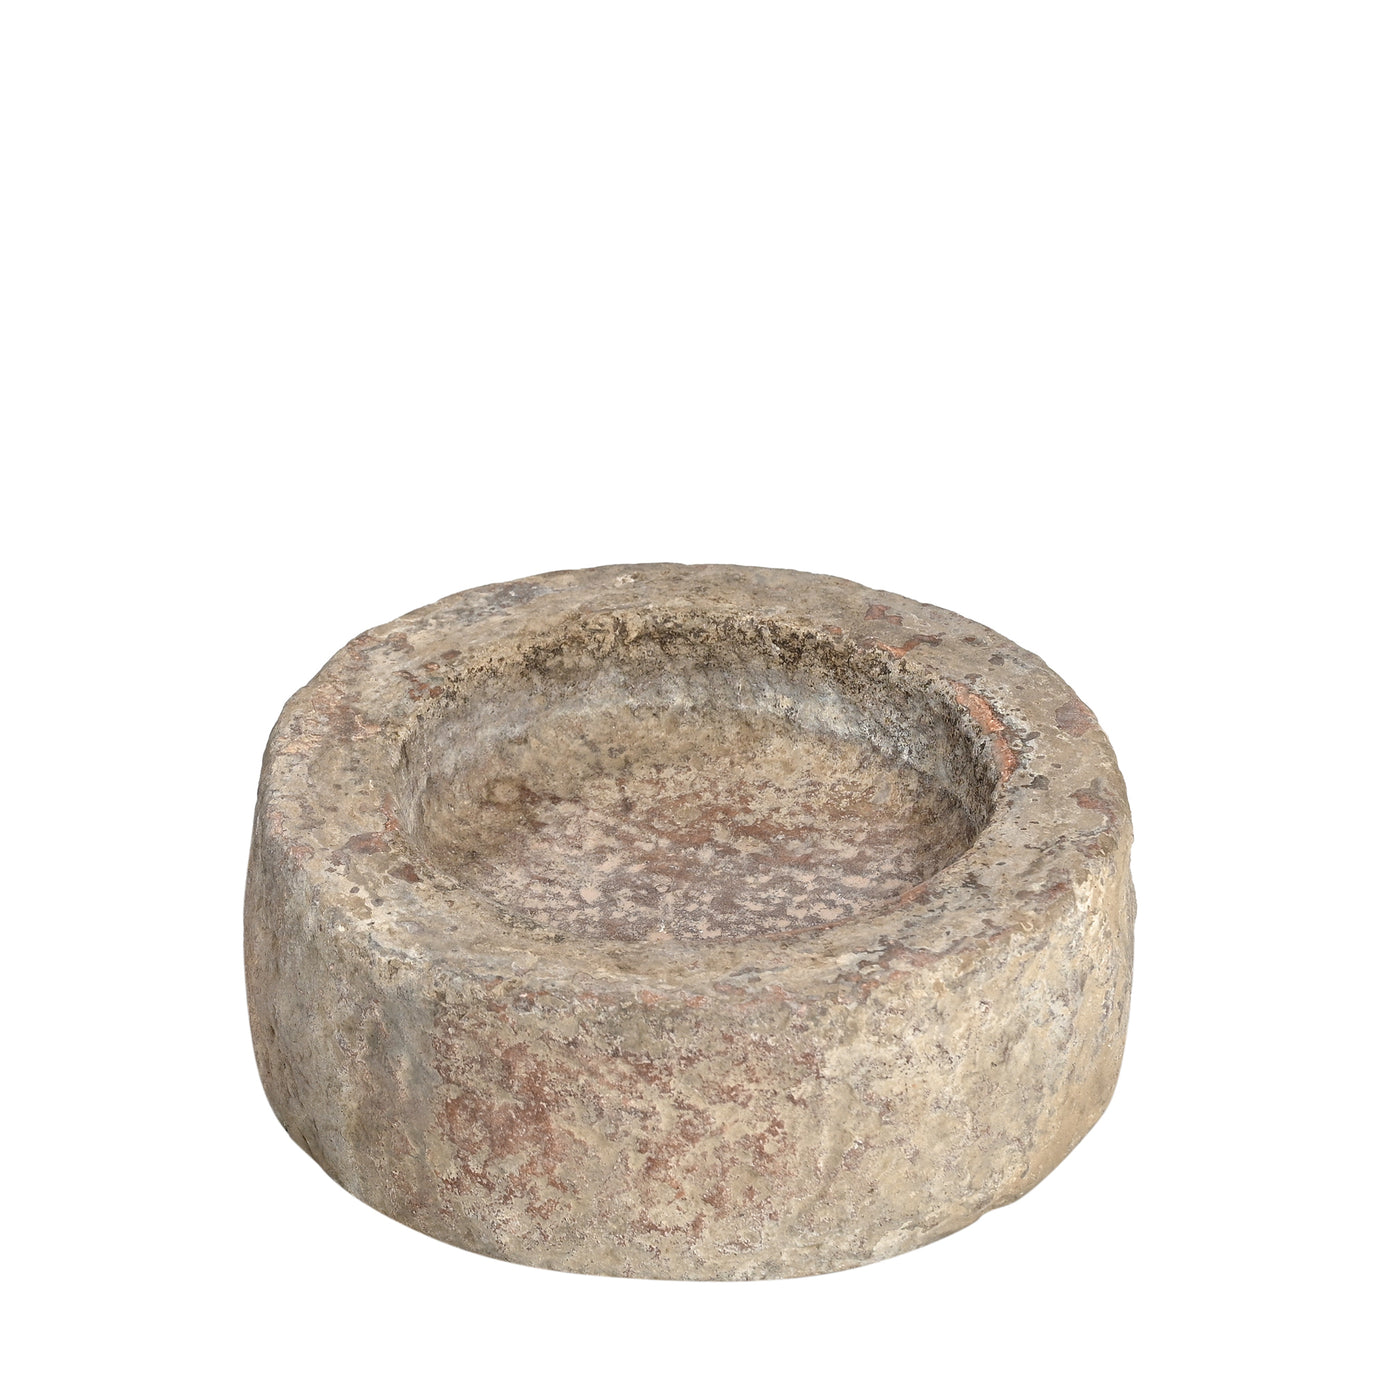 Devliya - Stone bowl n ° 9